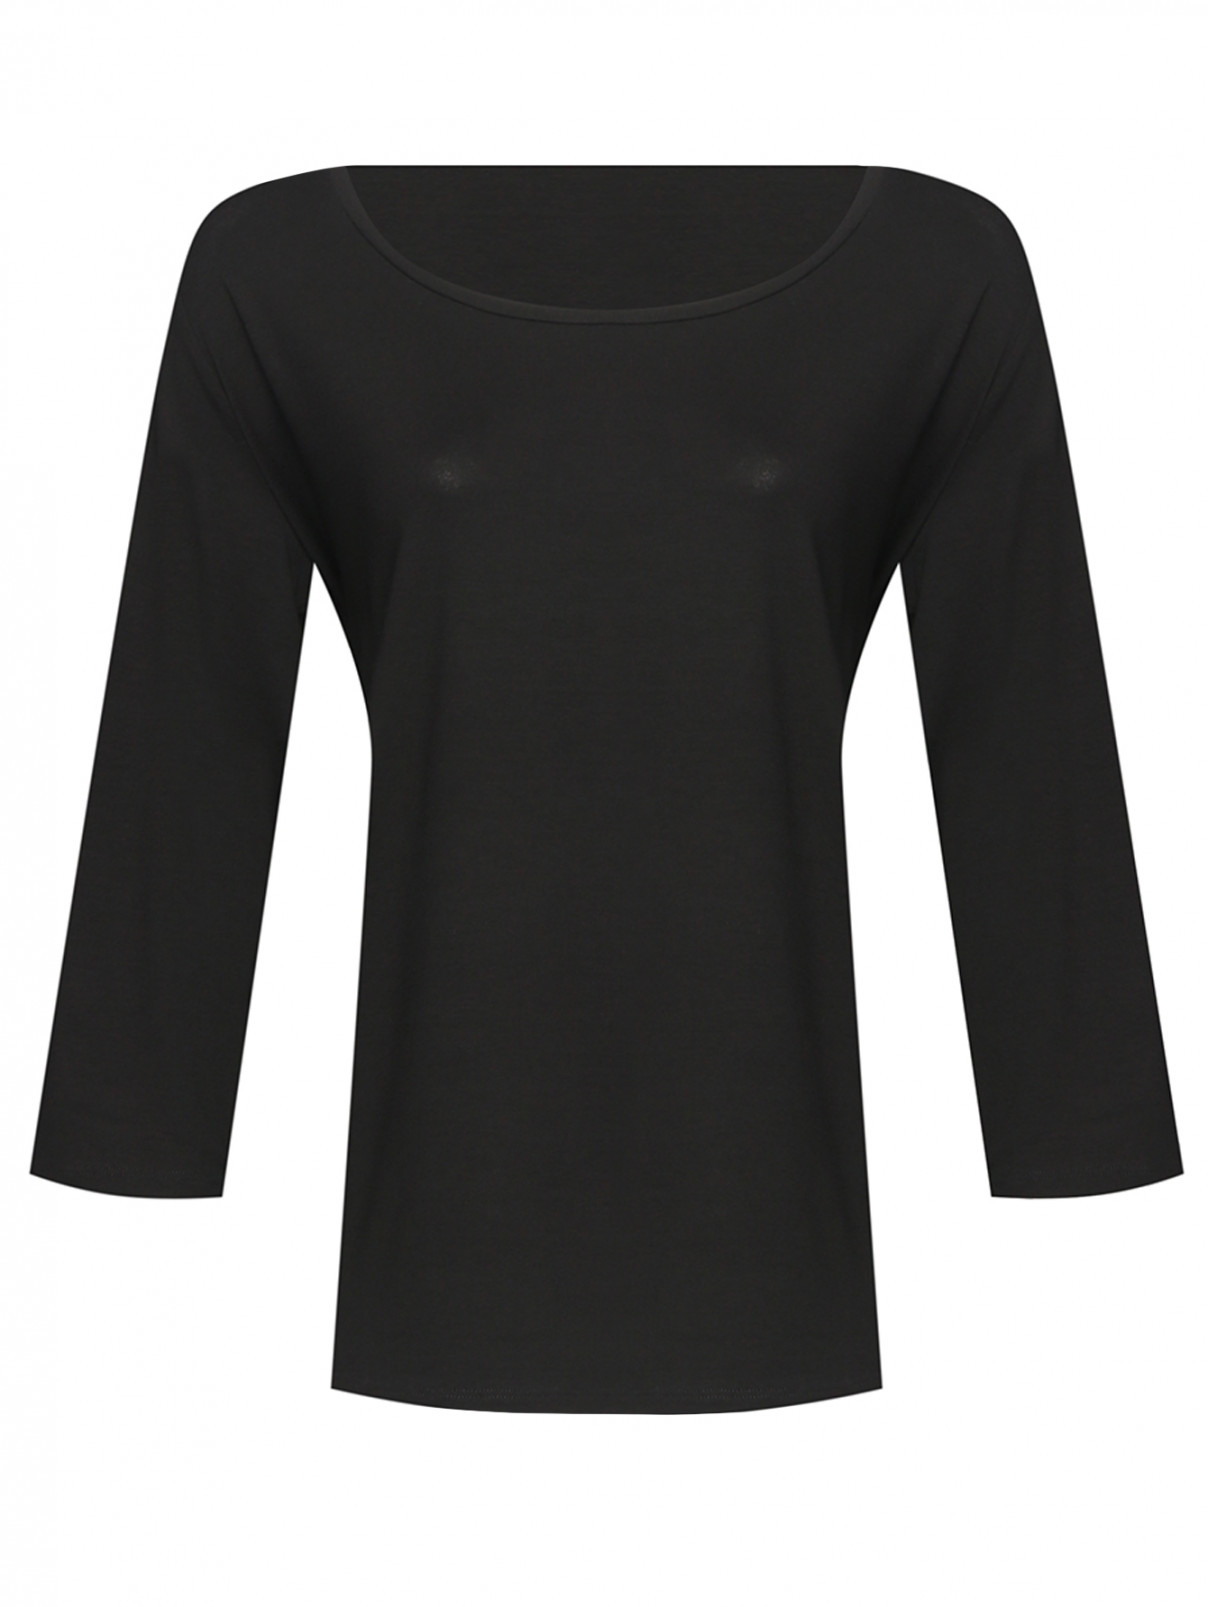 Однотонная футболка из вискозы Persona by Marina Rinaldi  –  Общий вид  – Цвет:  Черный